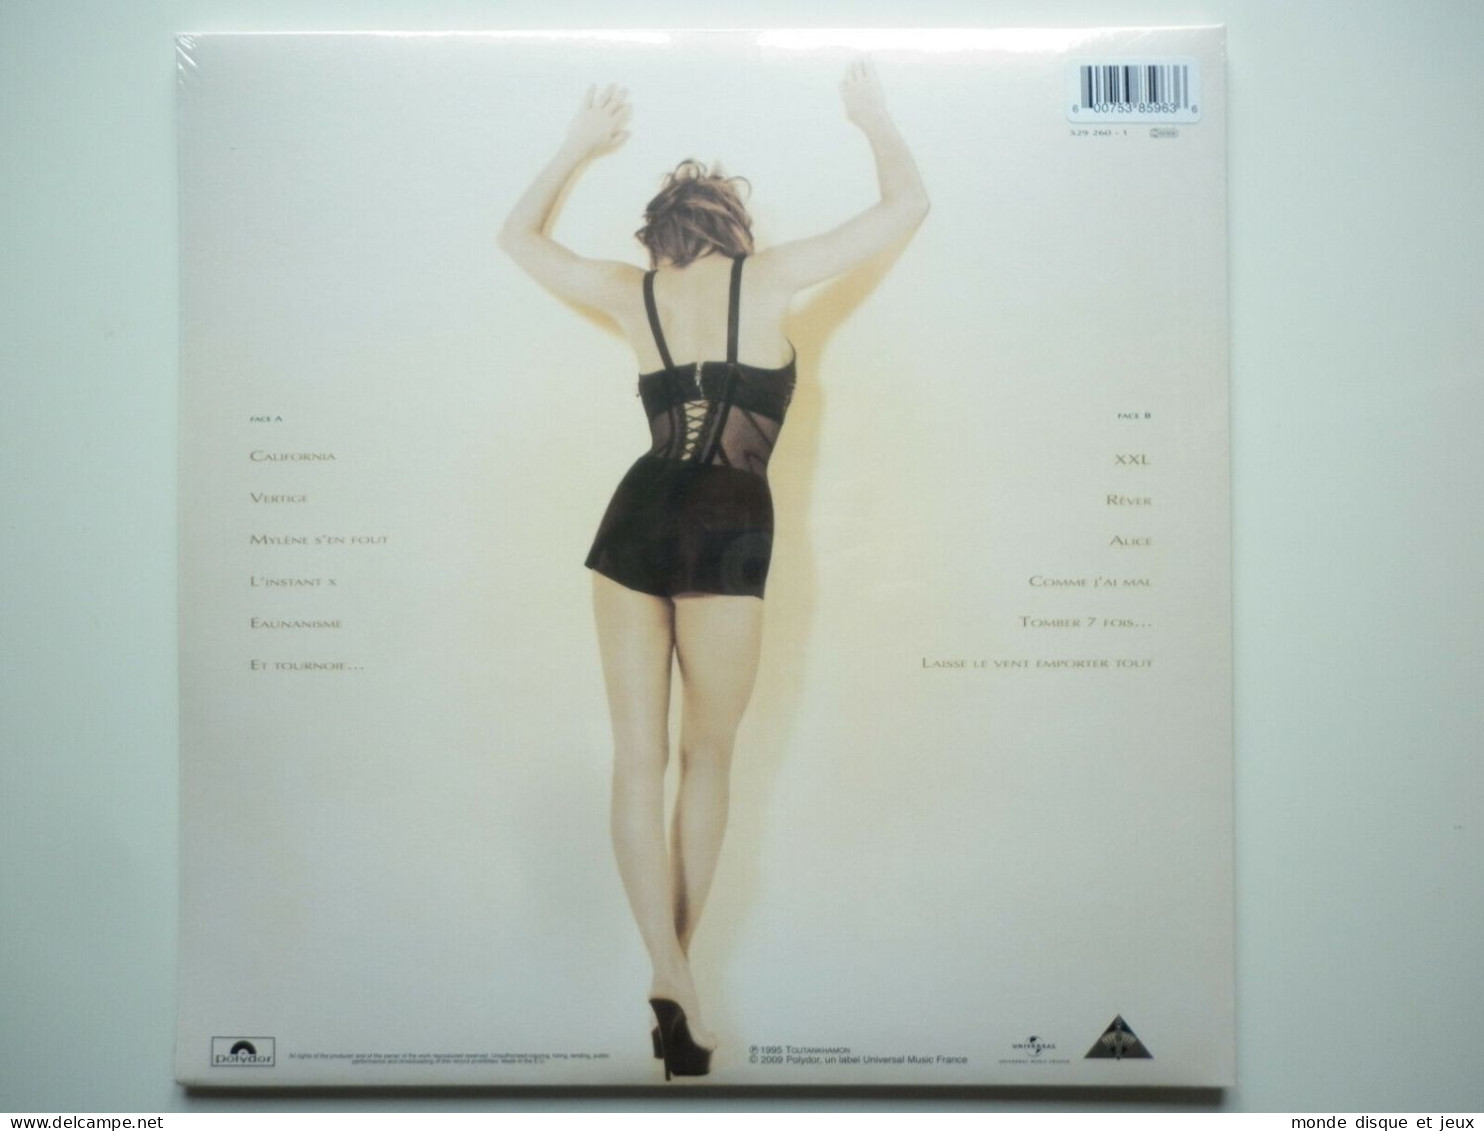 Mylene Farmer Album 33Tours Anamorphosée Exclusivité Vinyle Couleur Rouge Splatter - Altri - Francese